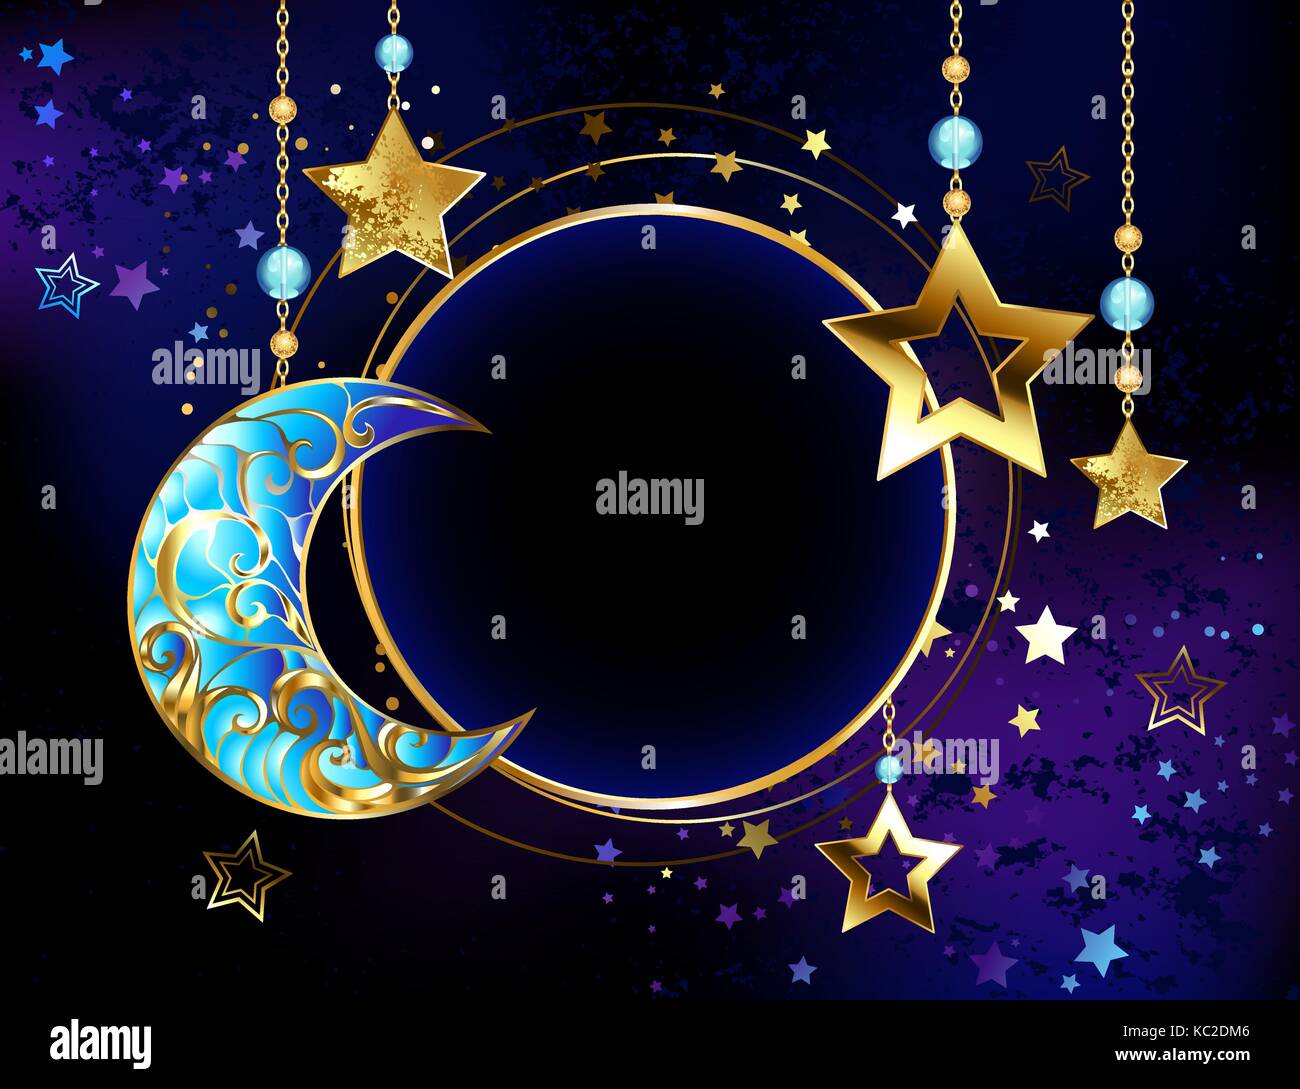 Bannière ronde avec un joyau Crescent, et d'étoiles d'or sur des chaînes en or sur un fond cosmologique lumineux. golden star. Bijoux Crescent. Illustration de Vecteur